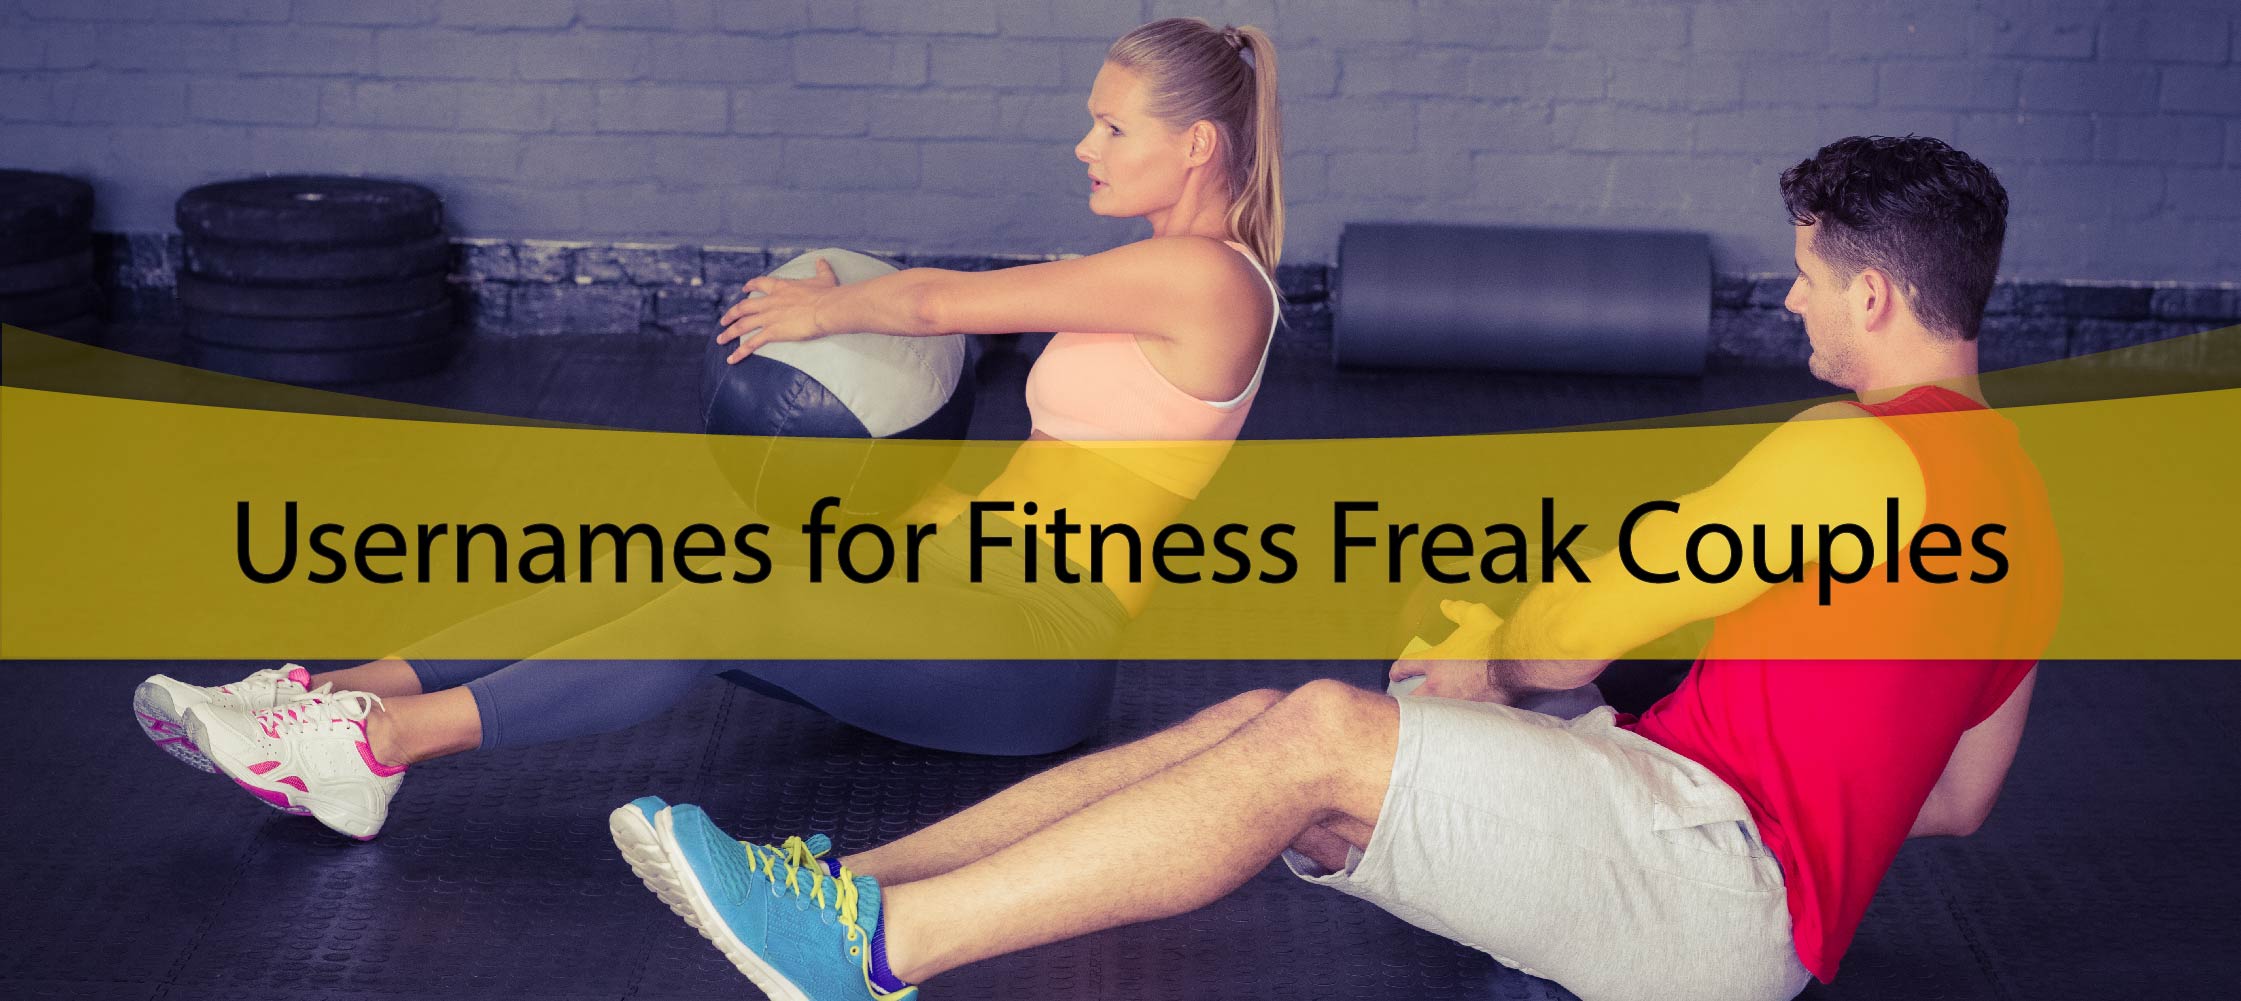 Usernames for Fitness Freak Couples